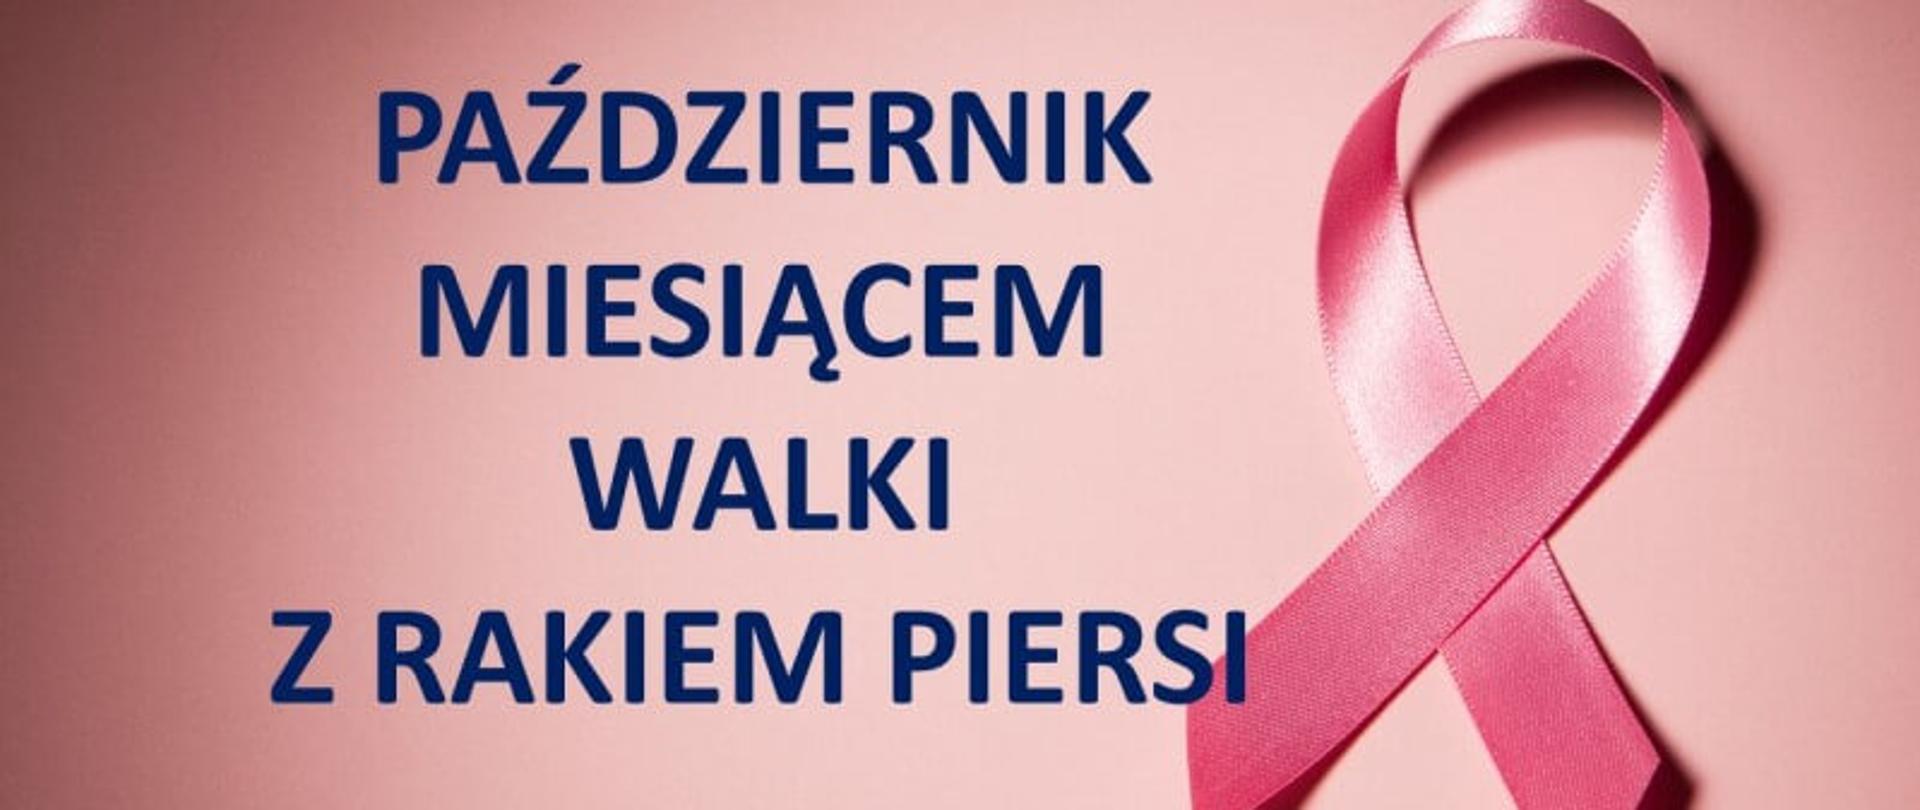 Grafika prezentująca październik jako miesiąc walki z rakiem piersi.